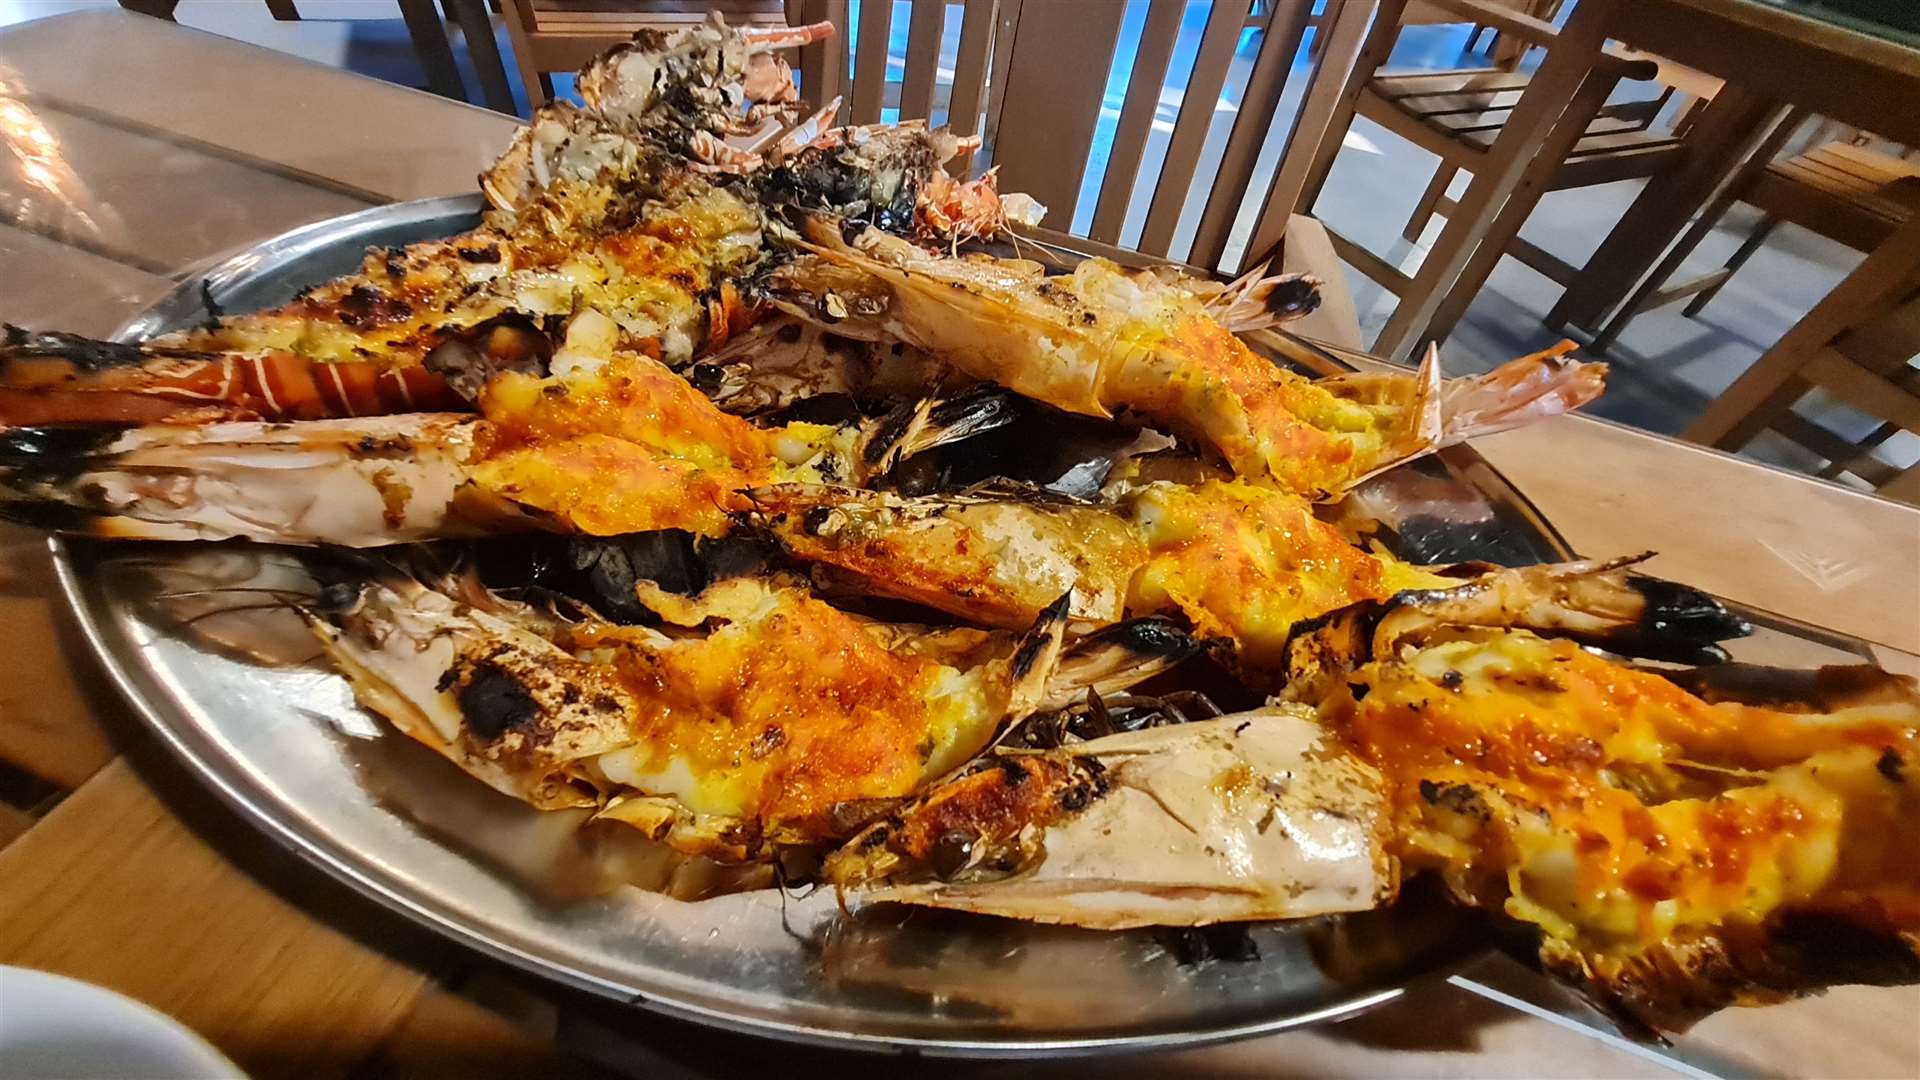 A seafood feast at the Souq Al Bahar restaurant in Jumeiriah